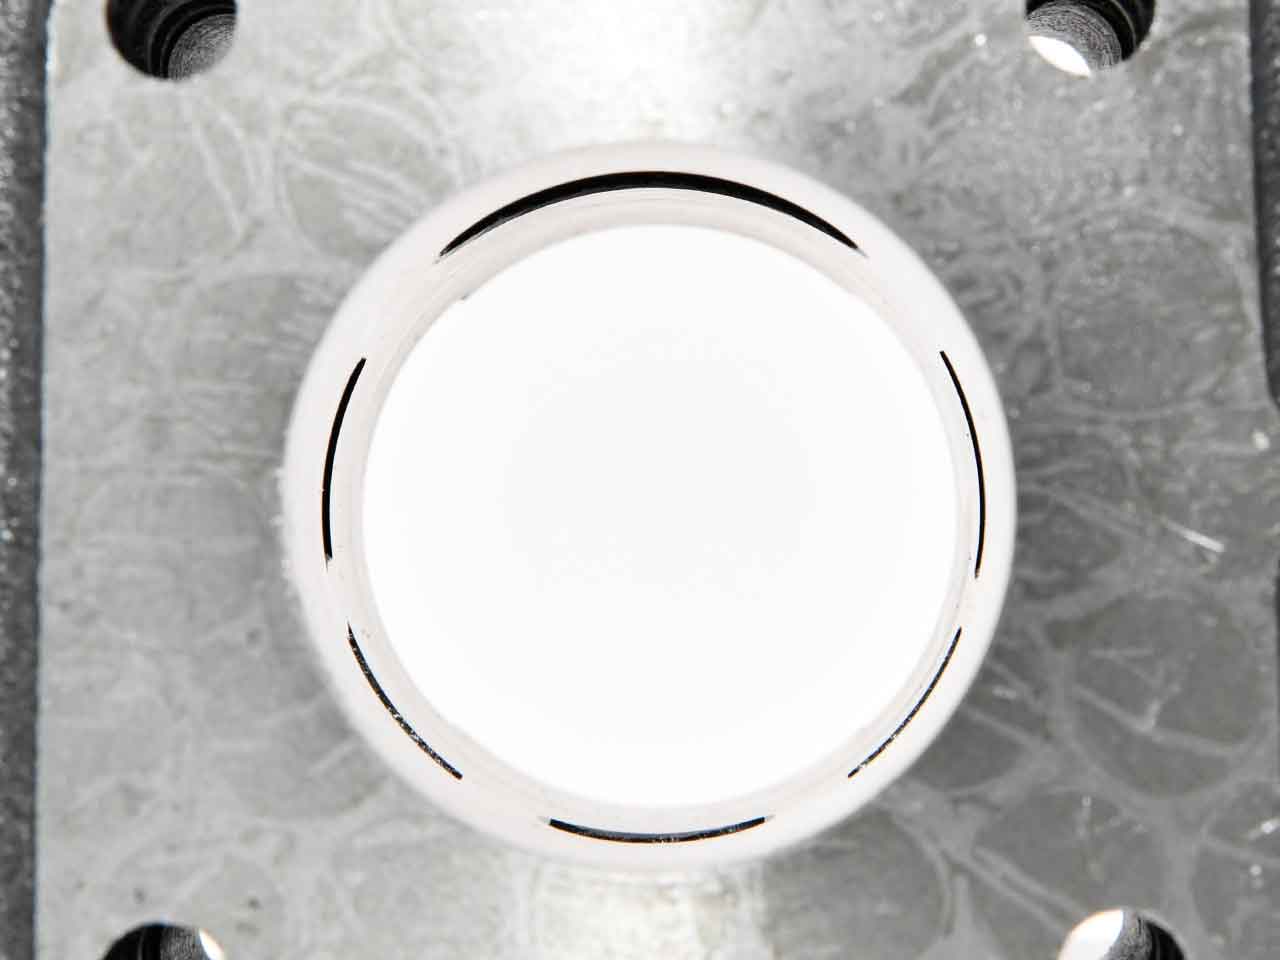 Bild von innen von einem Honda Bali Zylinder. 